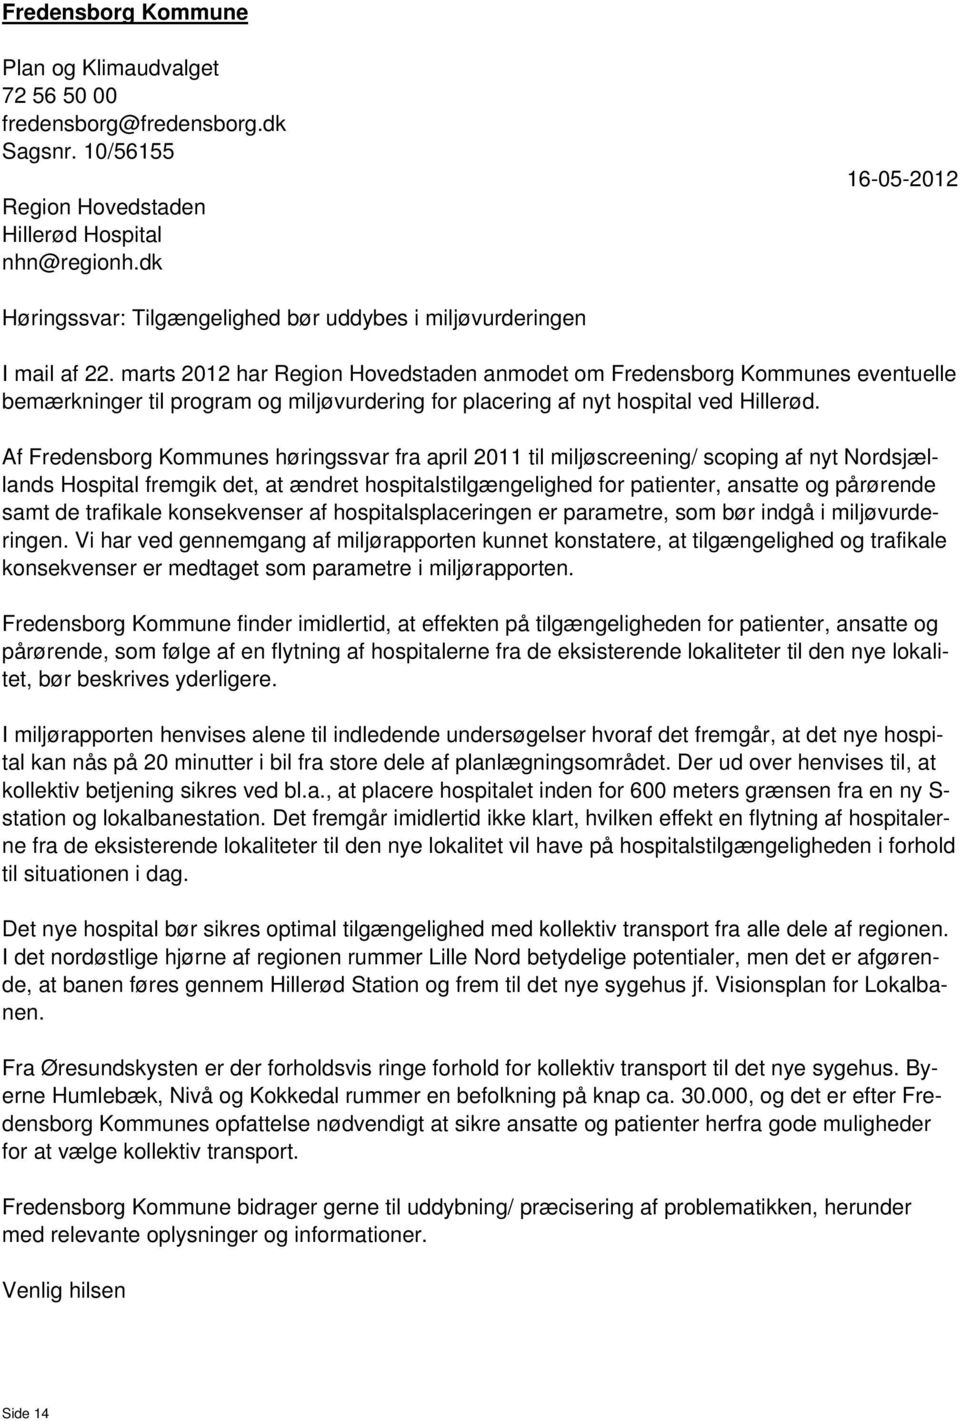 marts 2012 har Region Hovedstaden anmodet om Fredensborg Kommunes eventuelle bemærkninger til program og miljøvurdering for placering af nyt hospital ved Hillerød.